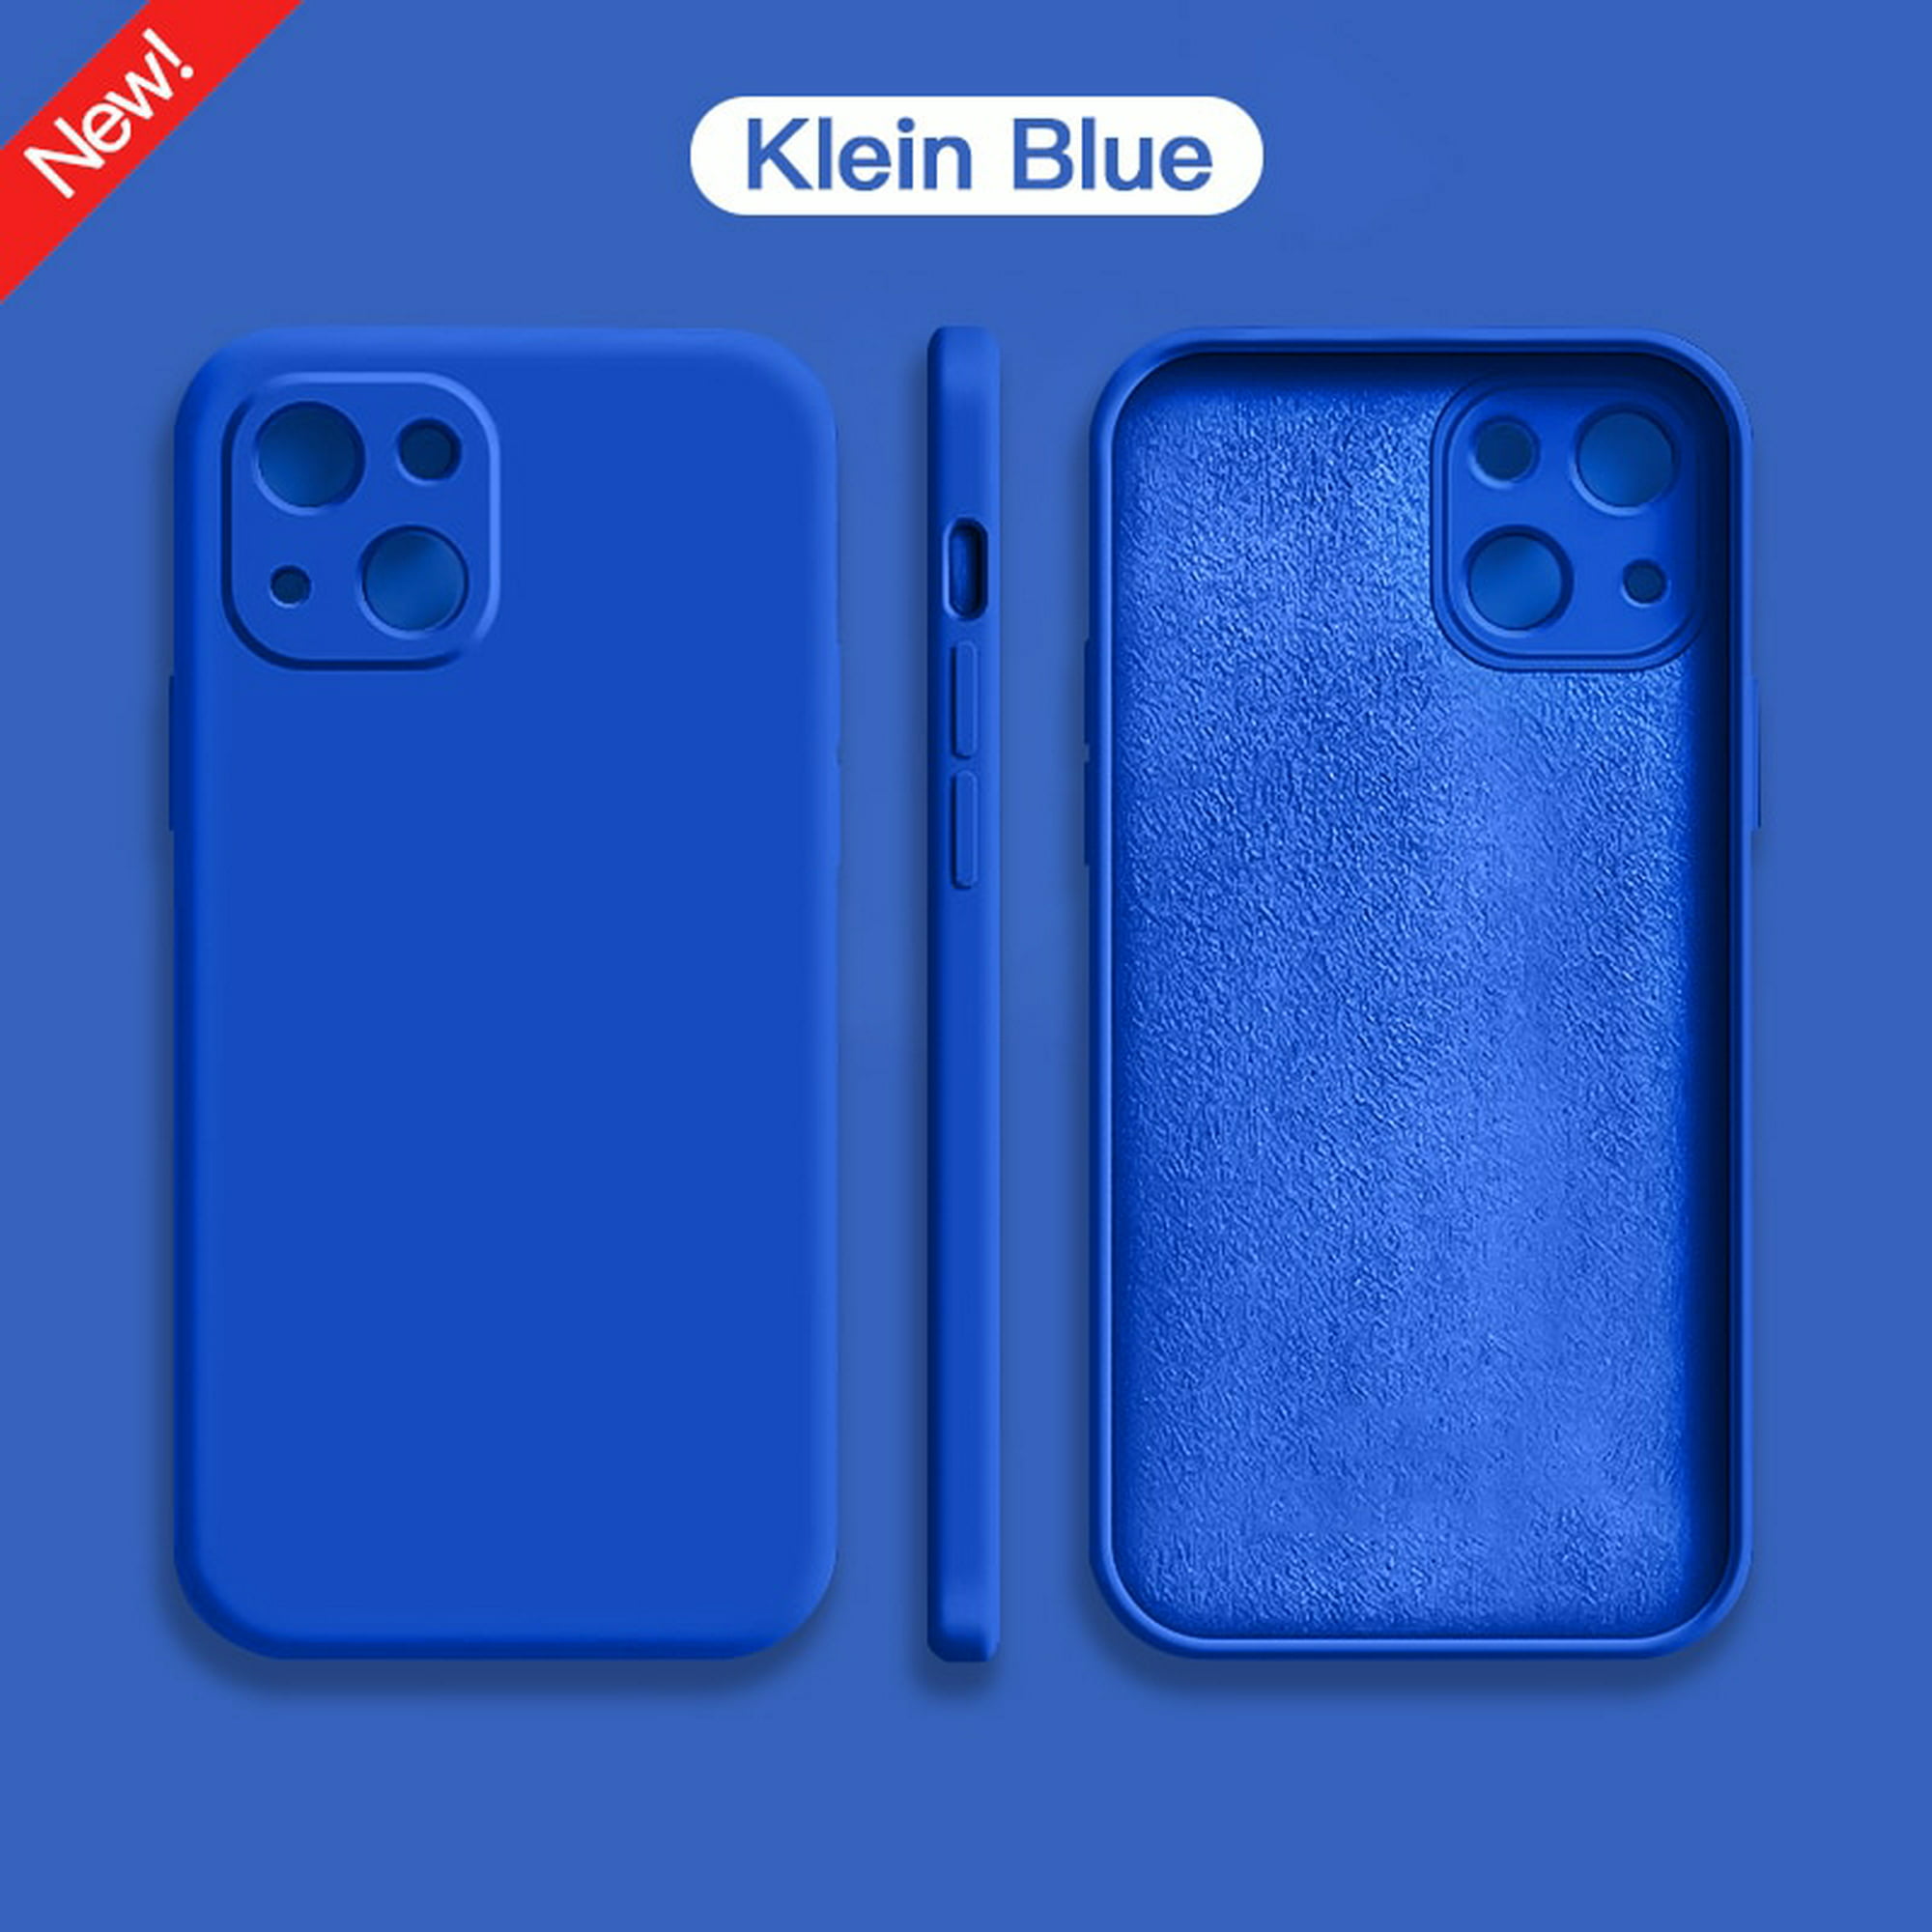 Funda silicona azul iPhone 11